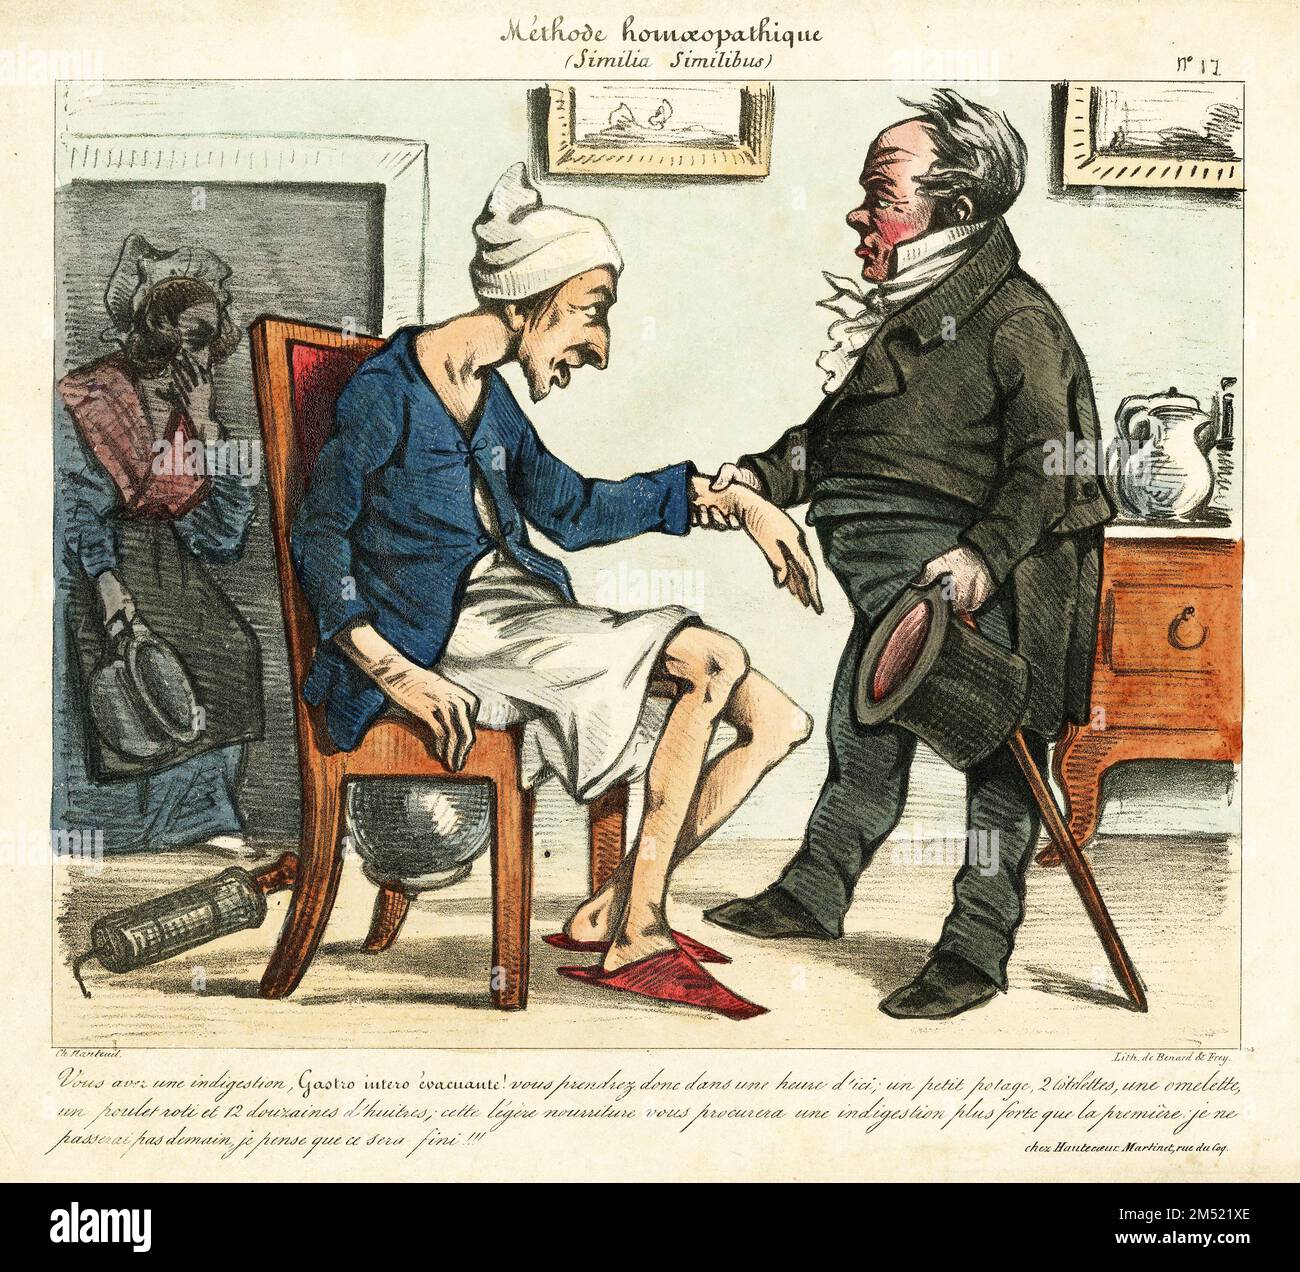 Gravure colorée moquant les méthodes de remèdes homéopathiques pour l'indigestion. D'une publication française à la fin de 1700s. Banque D'Images